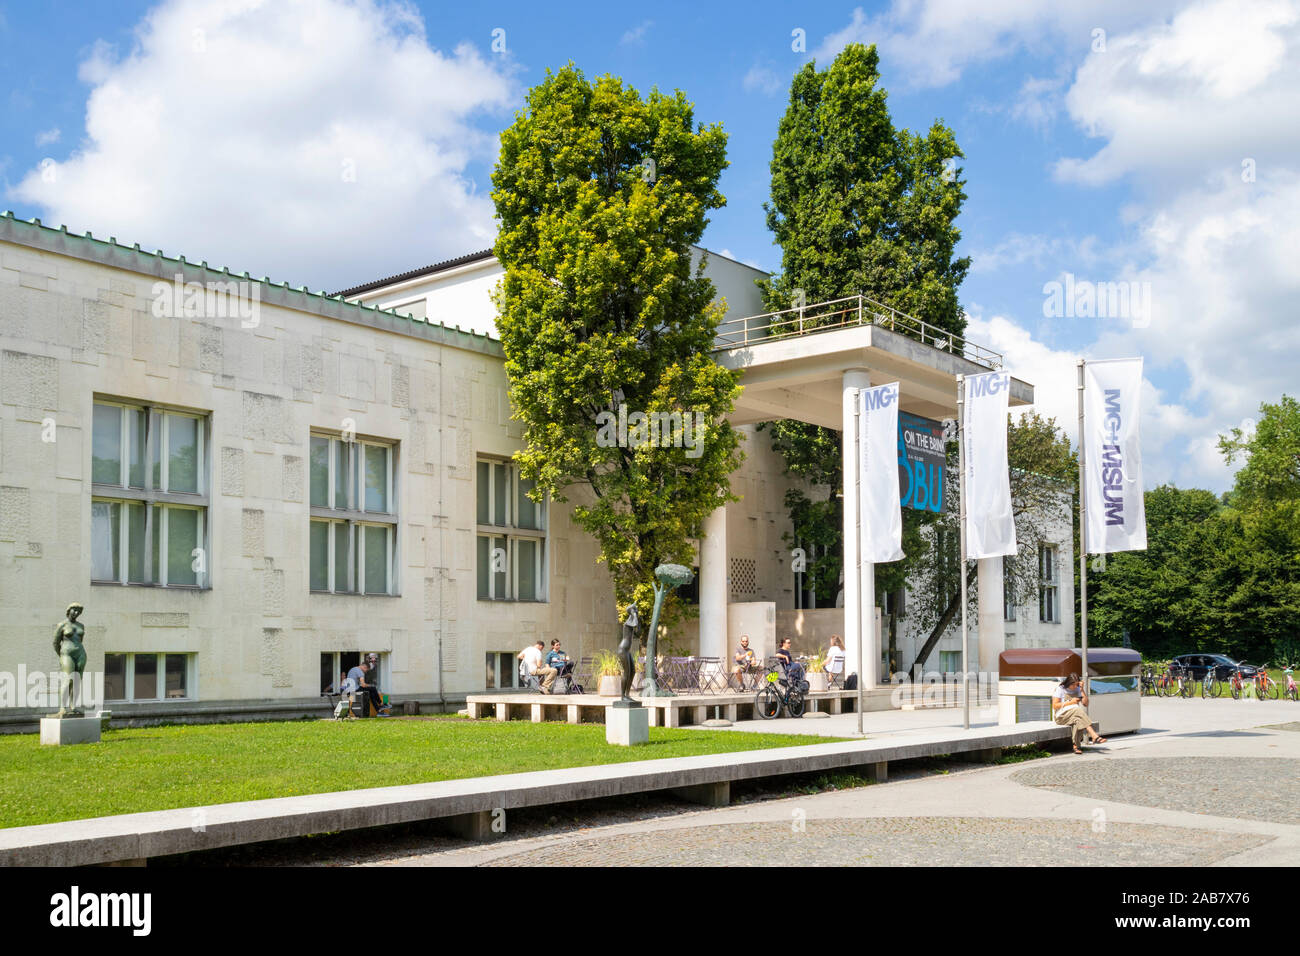 The entrance to the Ljubljana Museum of Modern Art, Cankarjeva Cesta, Ljubljana, Slovenia, Europe Stock Photo